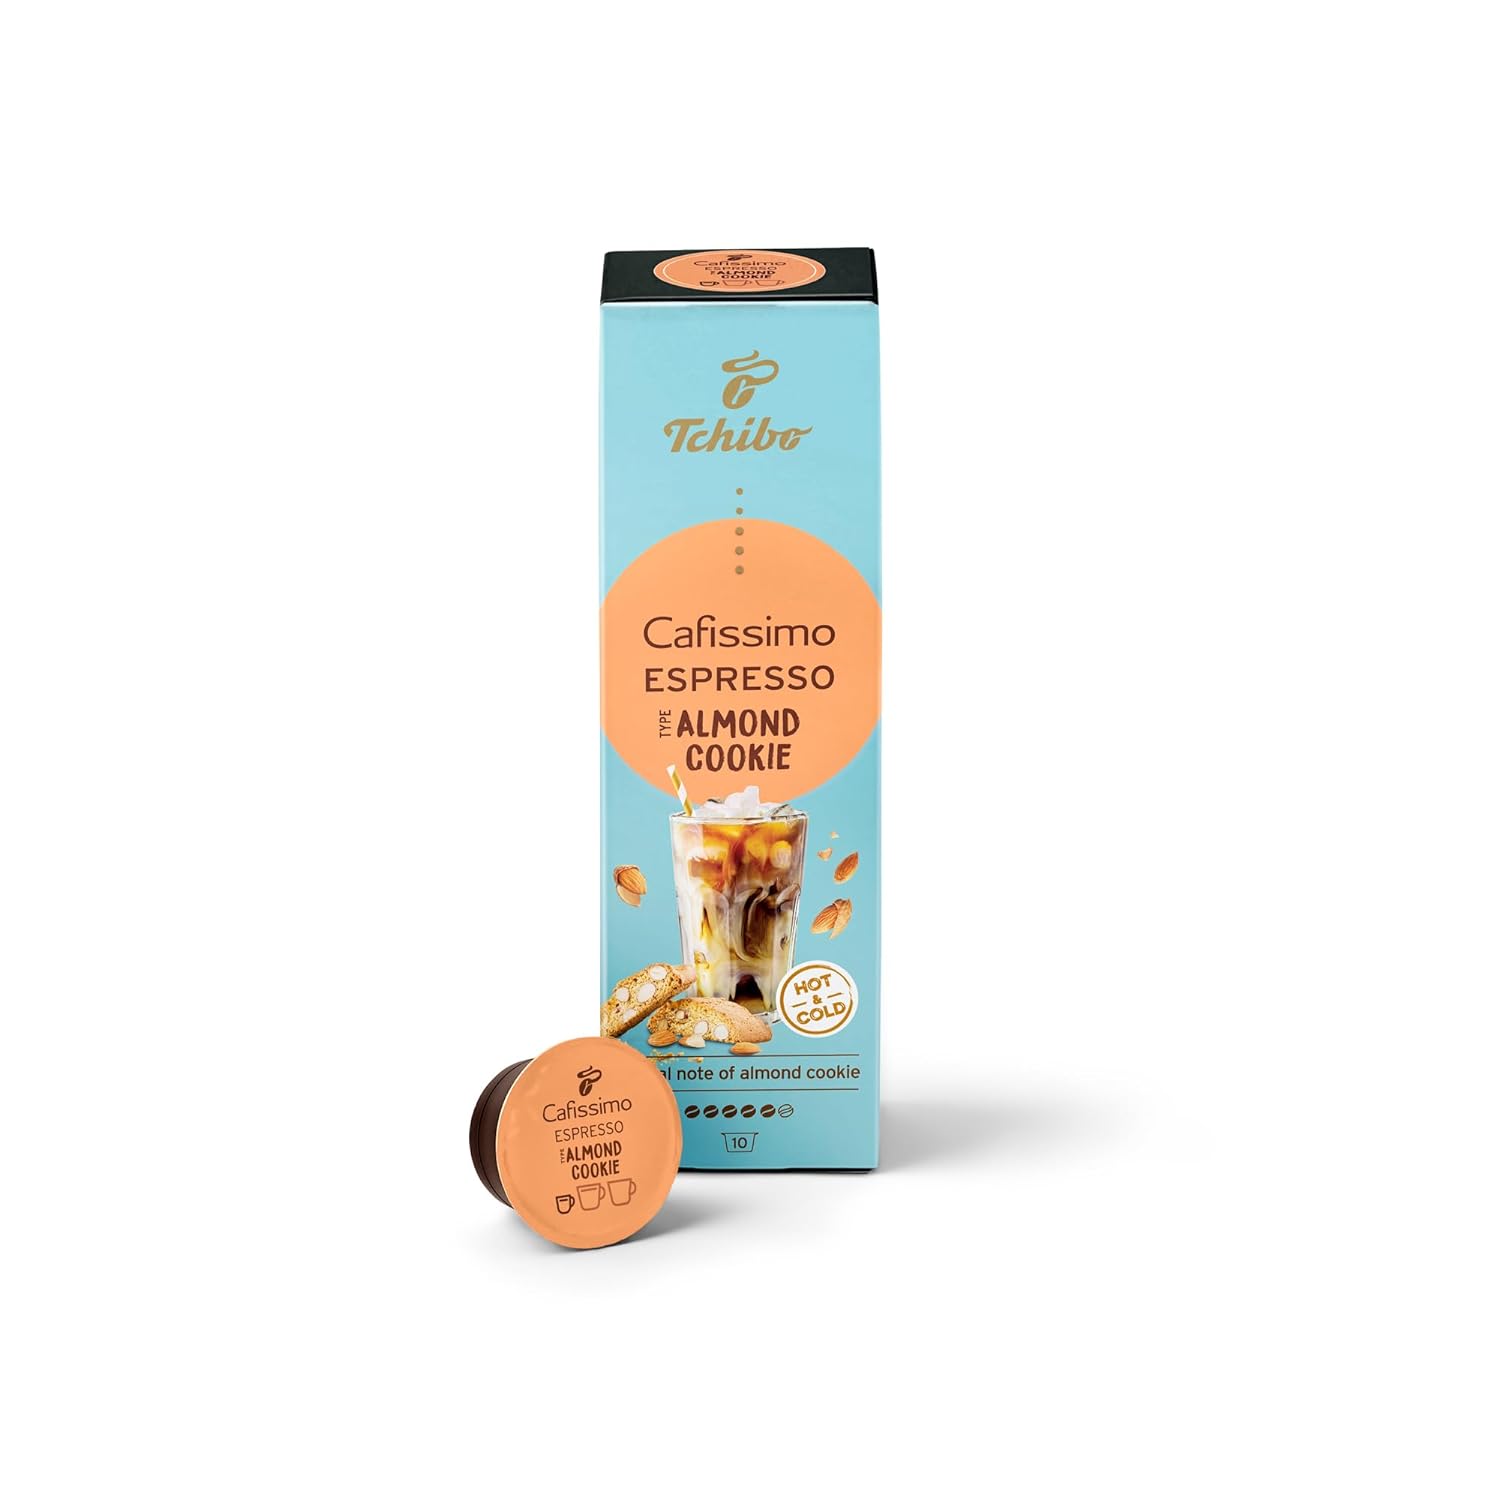 Tchibo Cafissimo Espresso Almond Cookie Kaffeekapseln, 10 Stück (Espresso, aromatisch mit Mandelkeks-Geschmack), nachhaltig & fair gehandelt, Limited Edition